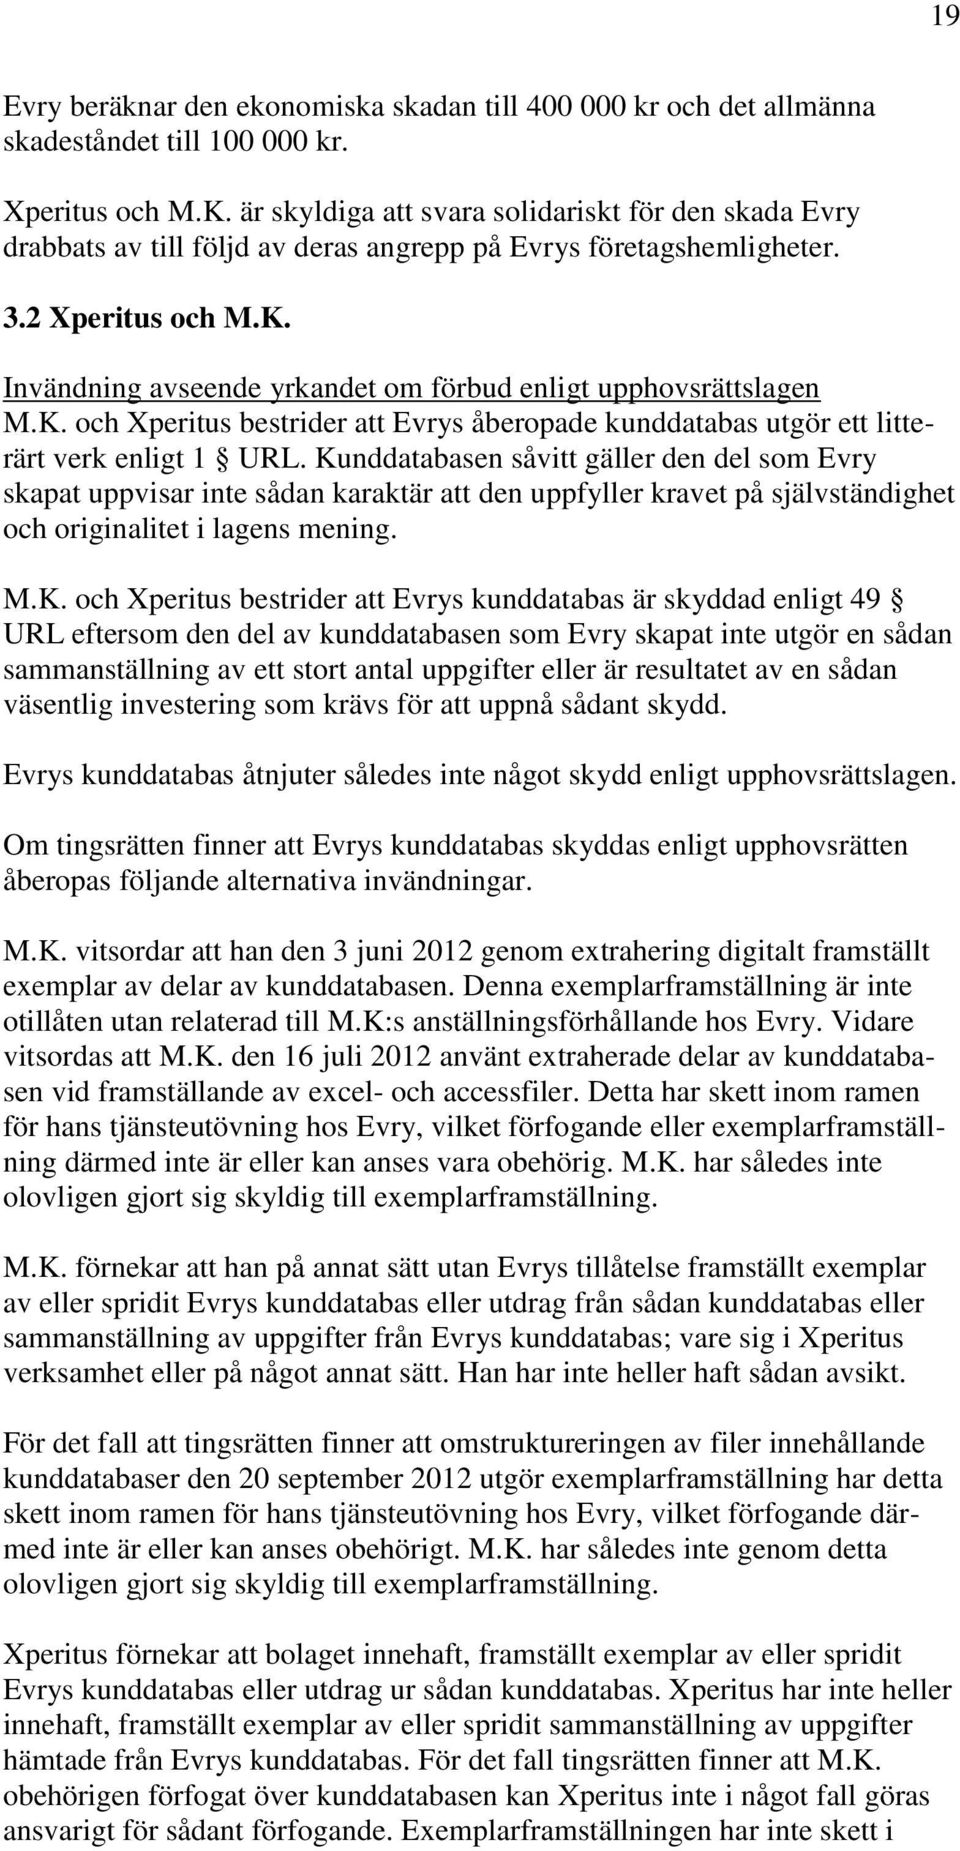 Invändning avseende yrkandet om förbud enligt upphovsrättslagen M.K. och Xperitus bestrider att Evrys åberopade kunddatabas utgör ett litterärt verk enligt 1 URL.